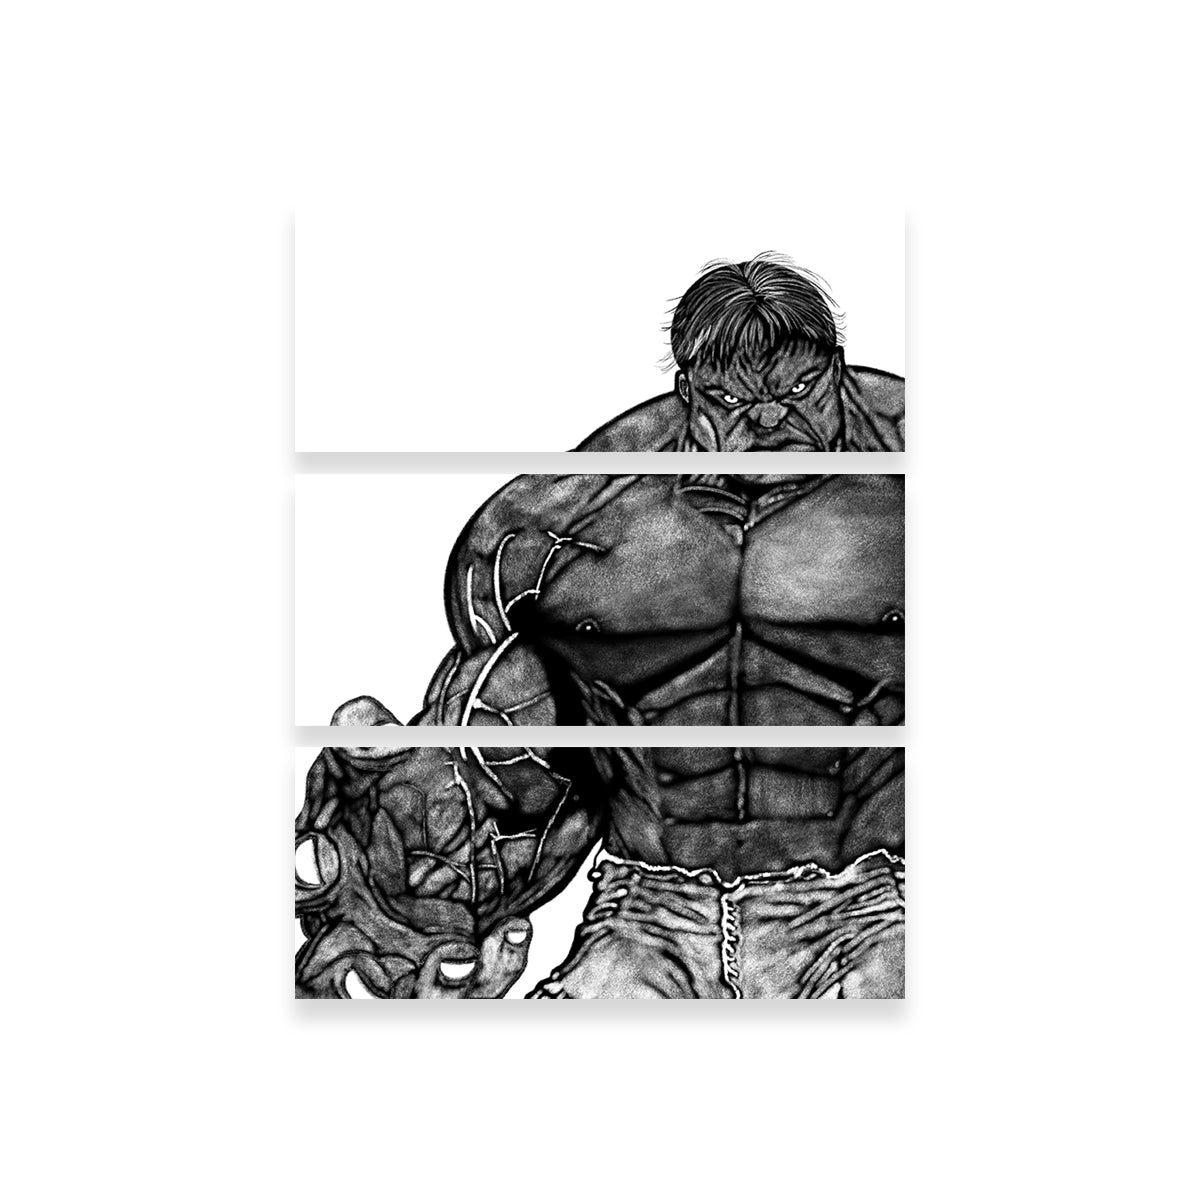 Hulk Sketch